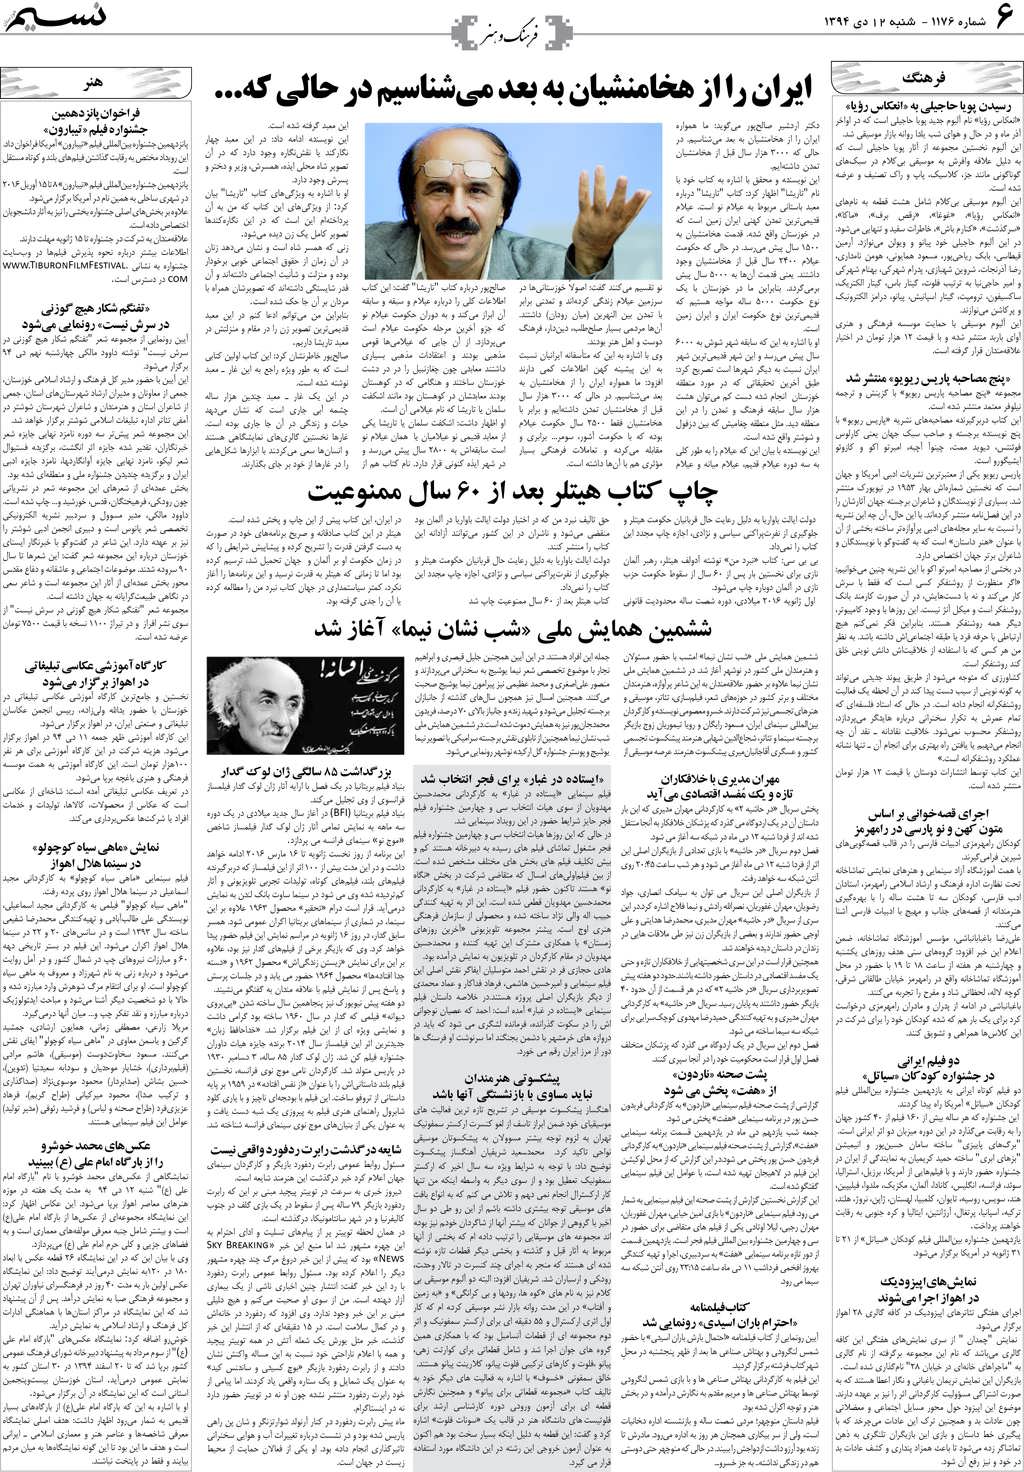 صفحه فرهنگ و هنر روزنامه نسیم شماره 1176